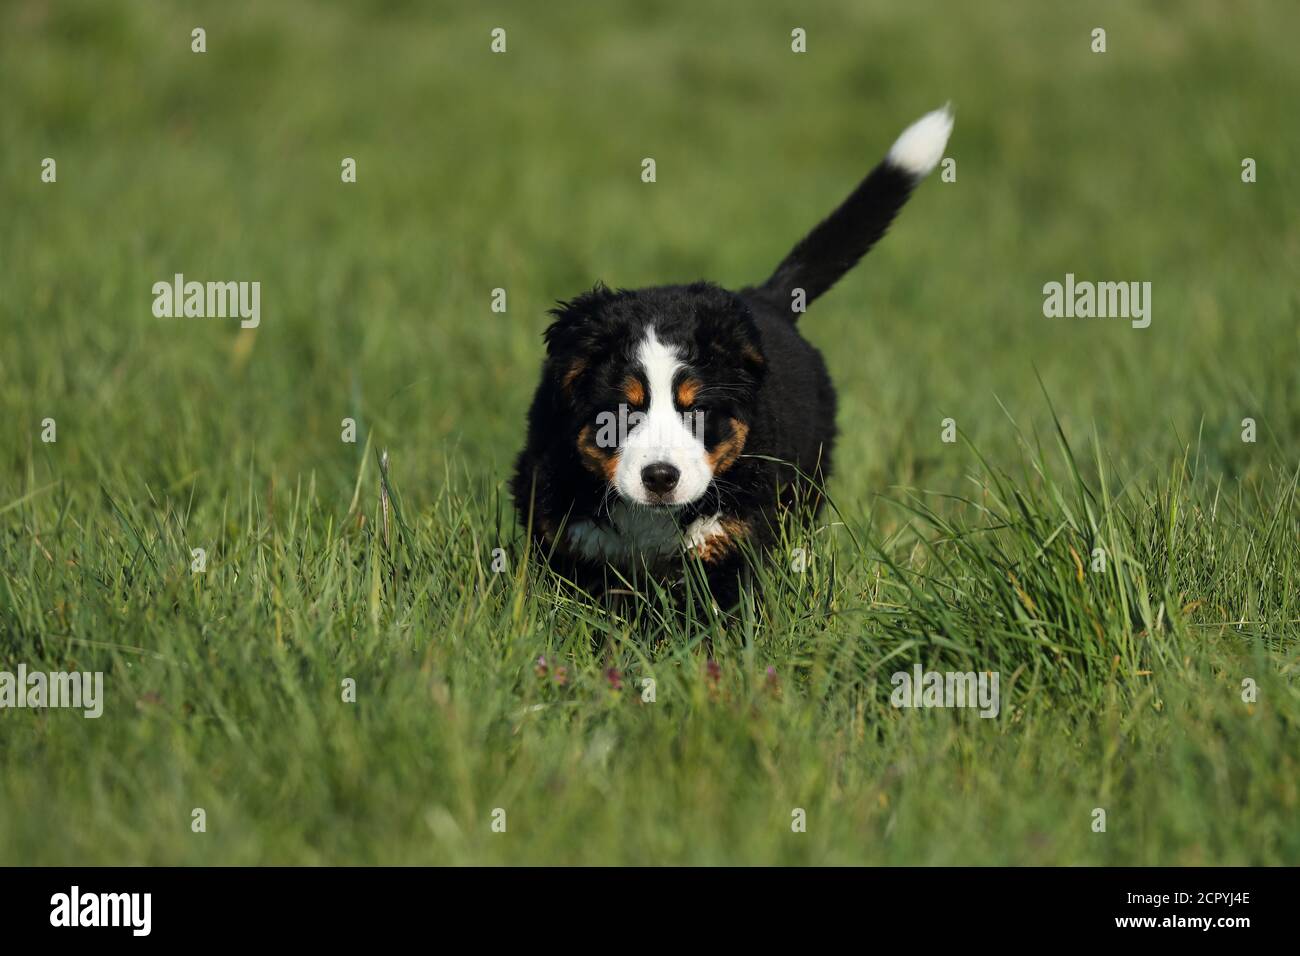 Bernese Mountain Dog runs across a meadow Stock Photo